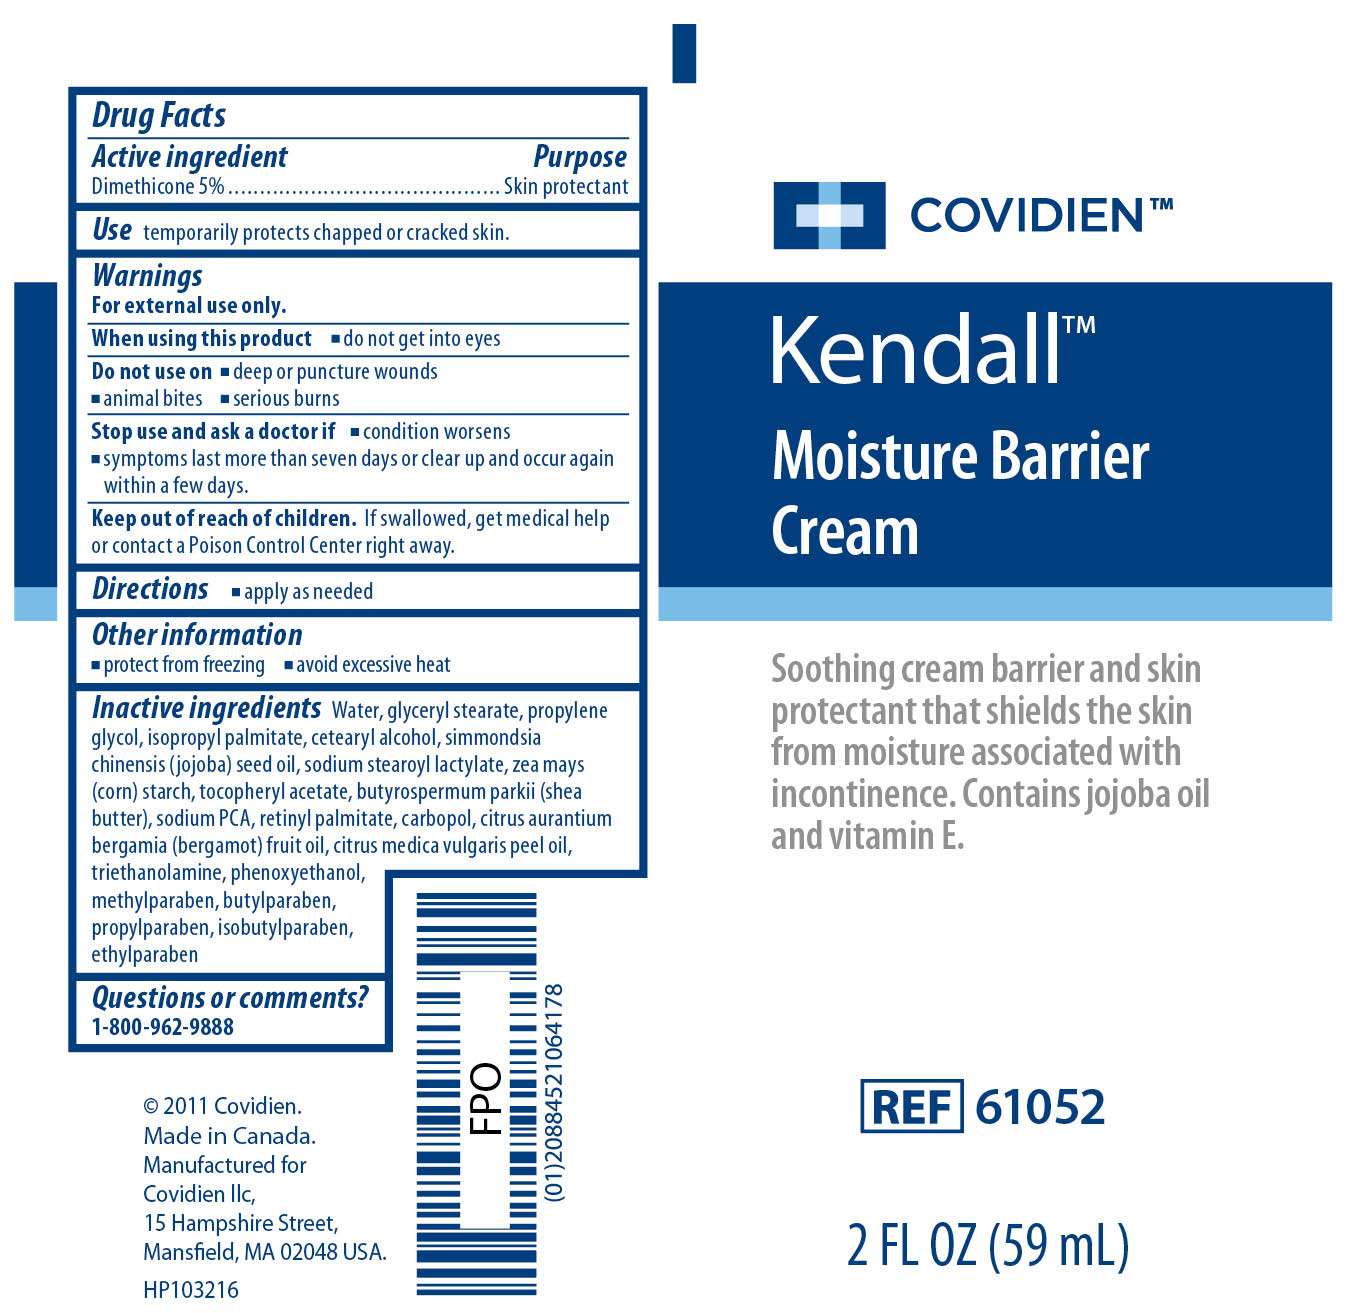 Kendall Moisture Barrier